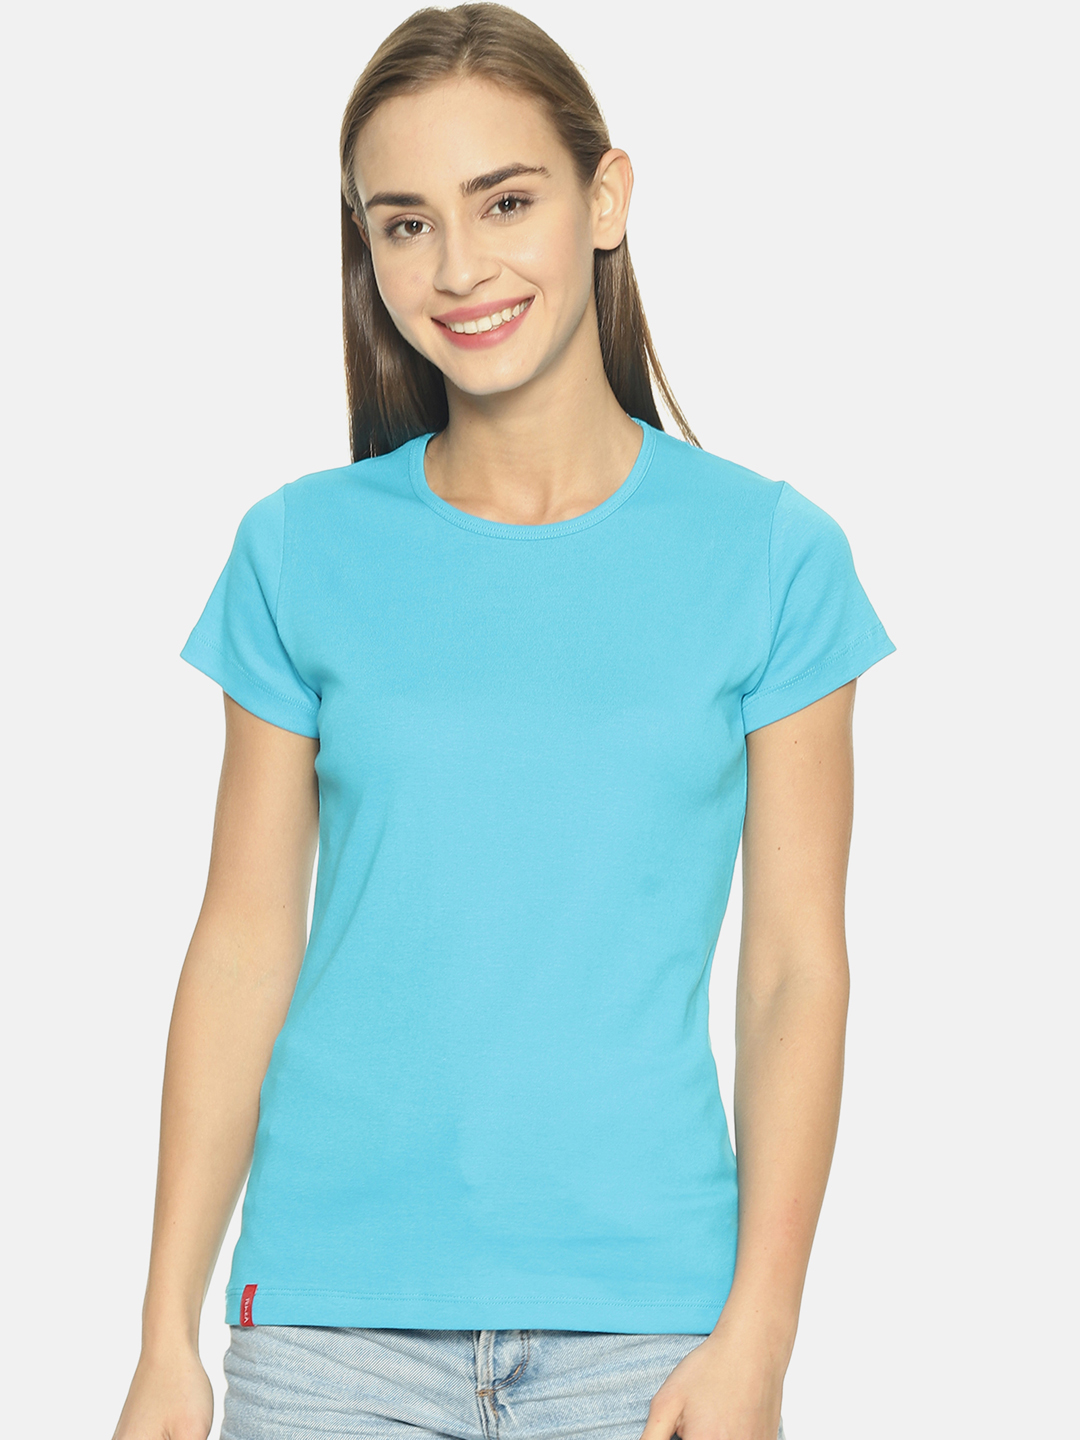 Women's Blue Round Neck T-shirt - Rvk